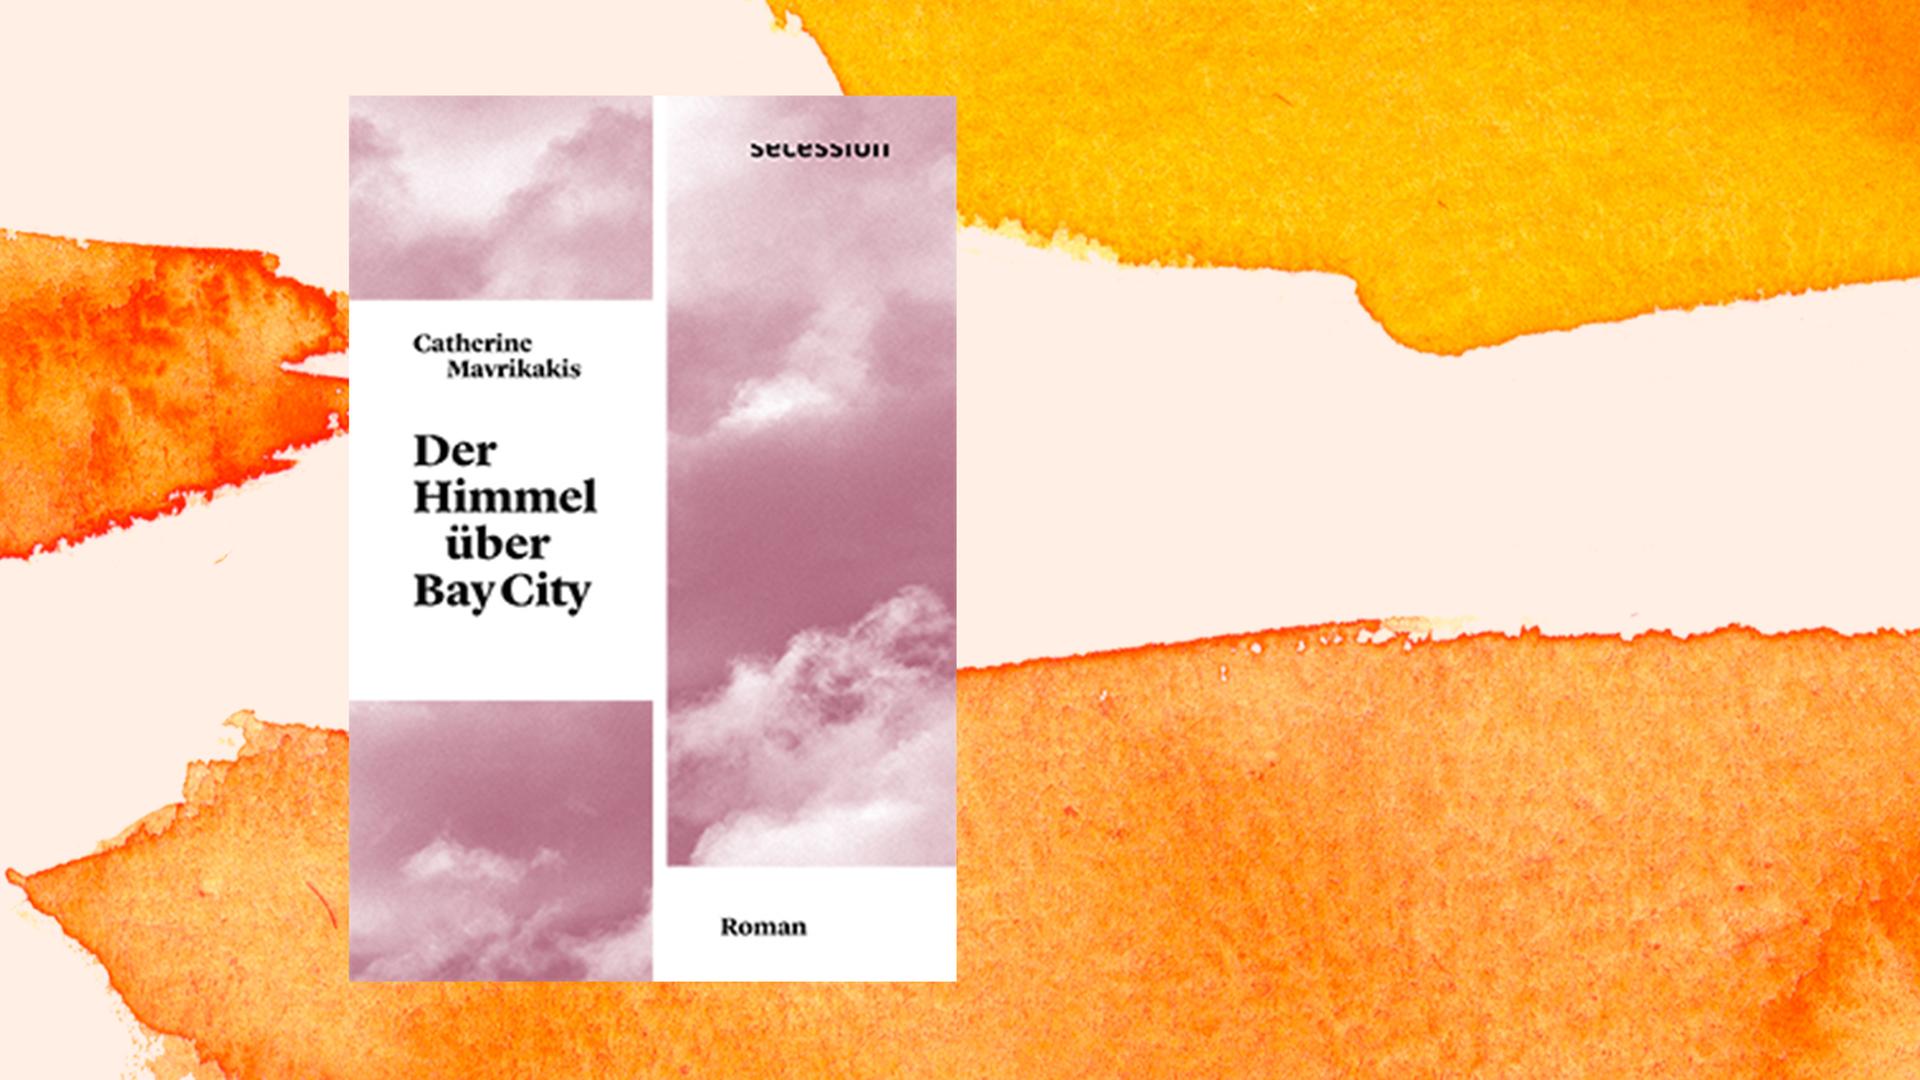 Buchcover von Catherine Mavrikakis: "Der Himmel über Bay City", Secession Verlag, 2021.